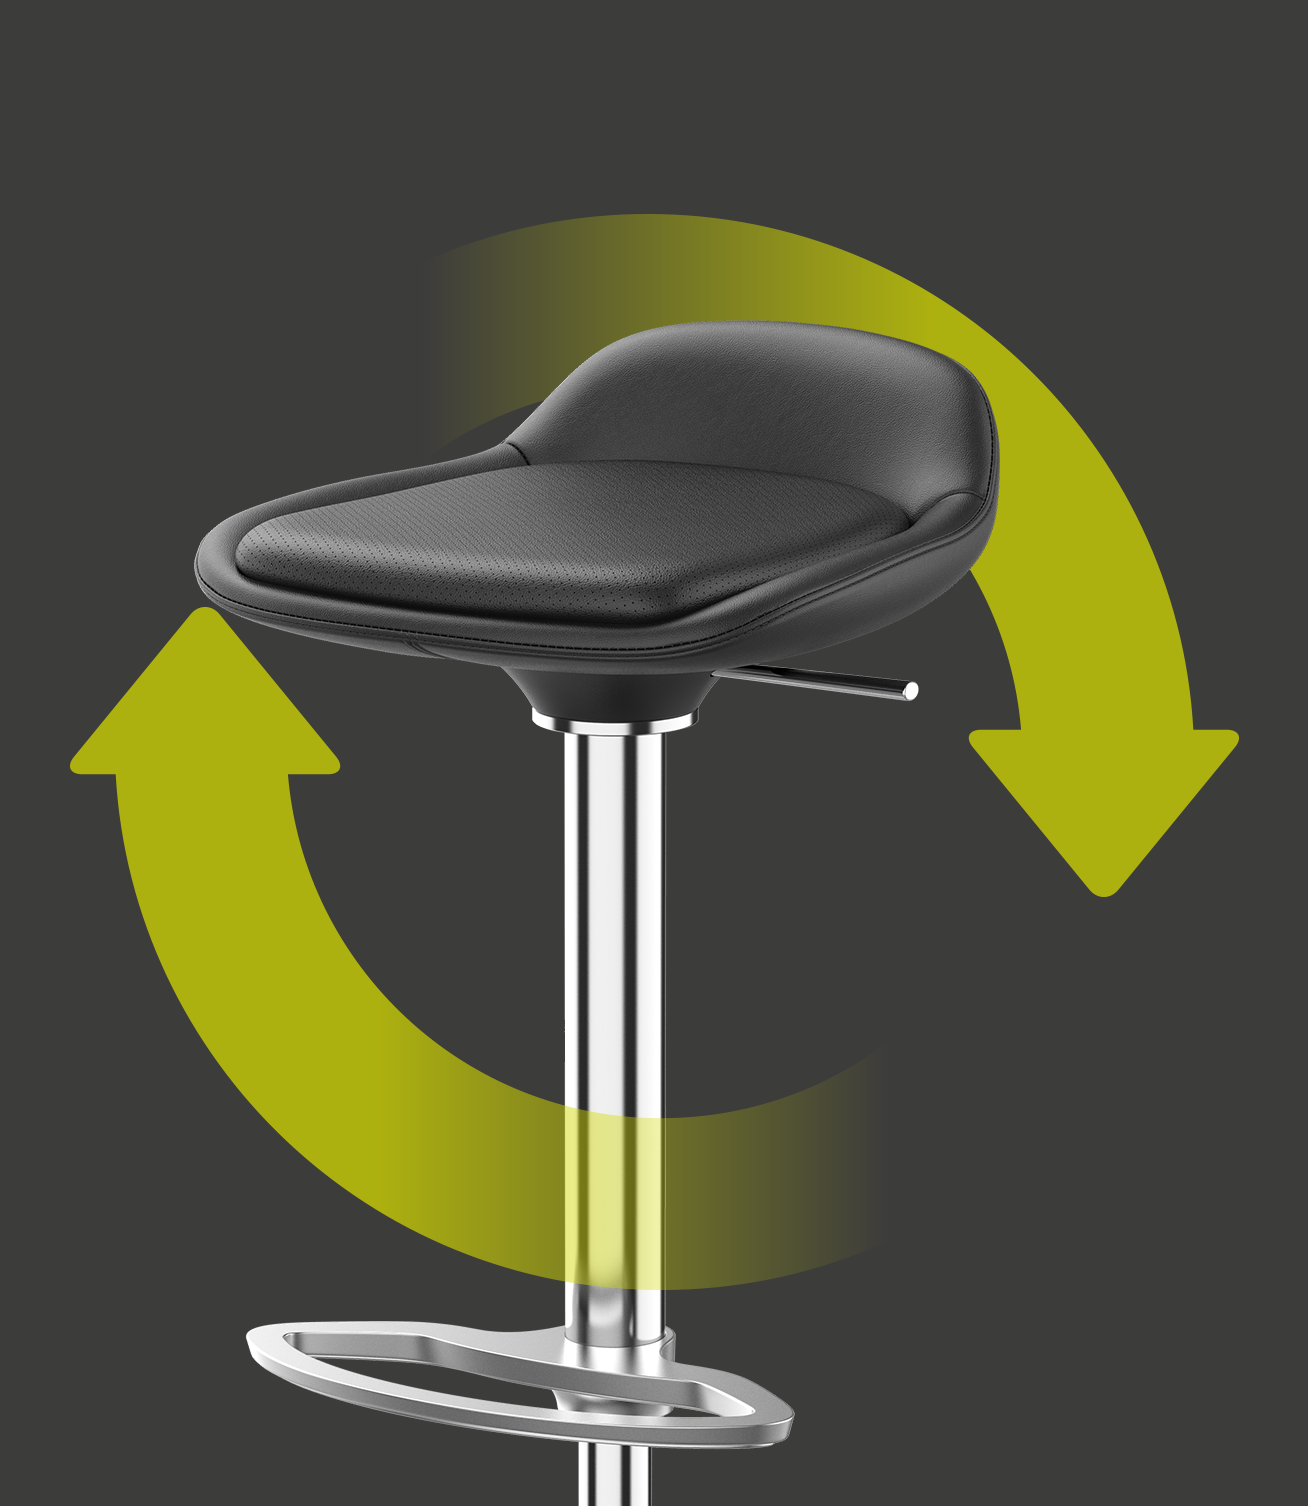 Elegante barkruk LIME met zitting- en rugbekleding van zwart leder, alsmede verchroomd frame, met twee groene pijlen die rondom de barkruk een cirkel vormen. Dit geeft de duurzaamheid en herbruikbaarheid van de stoel aan | by studiokurbos